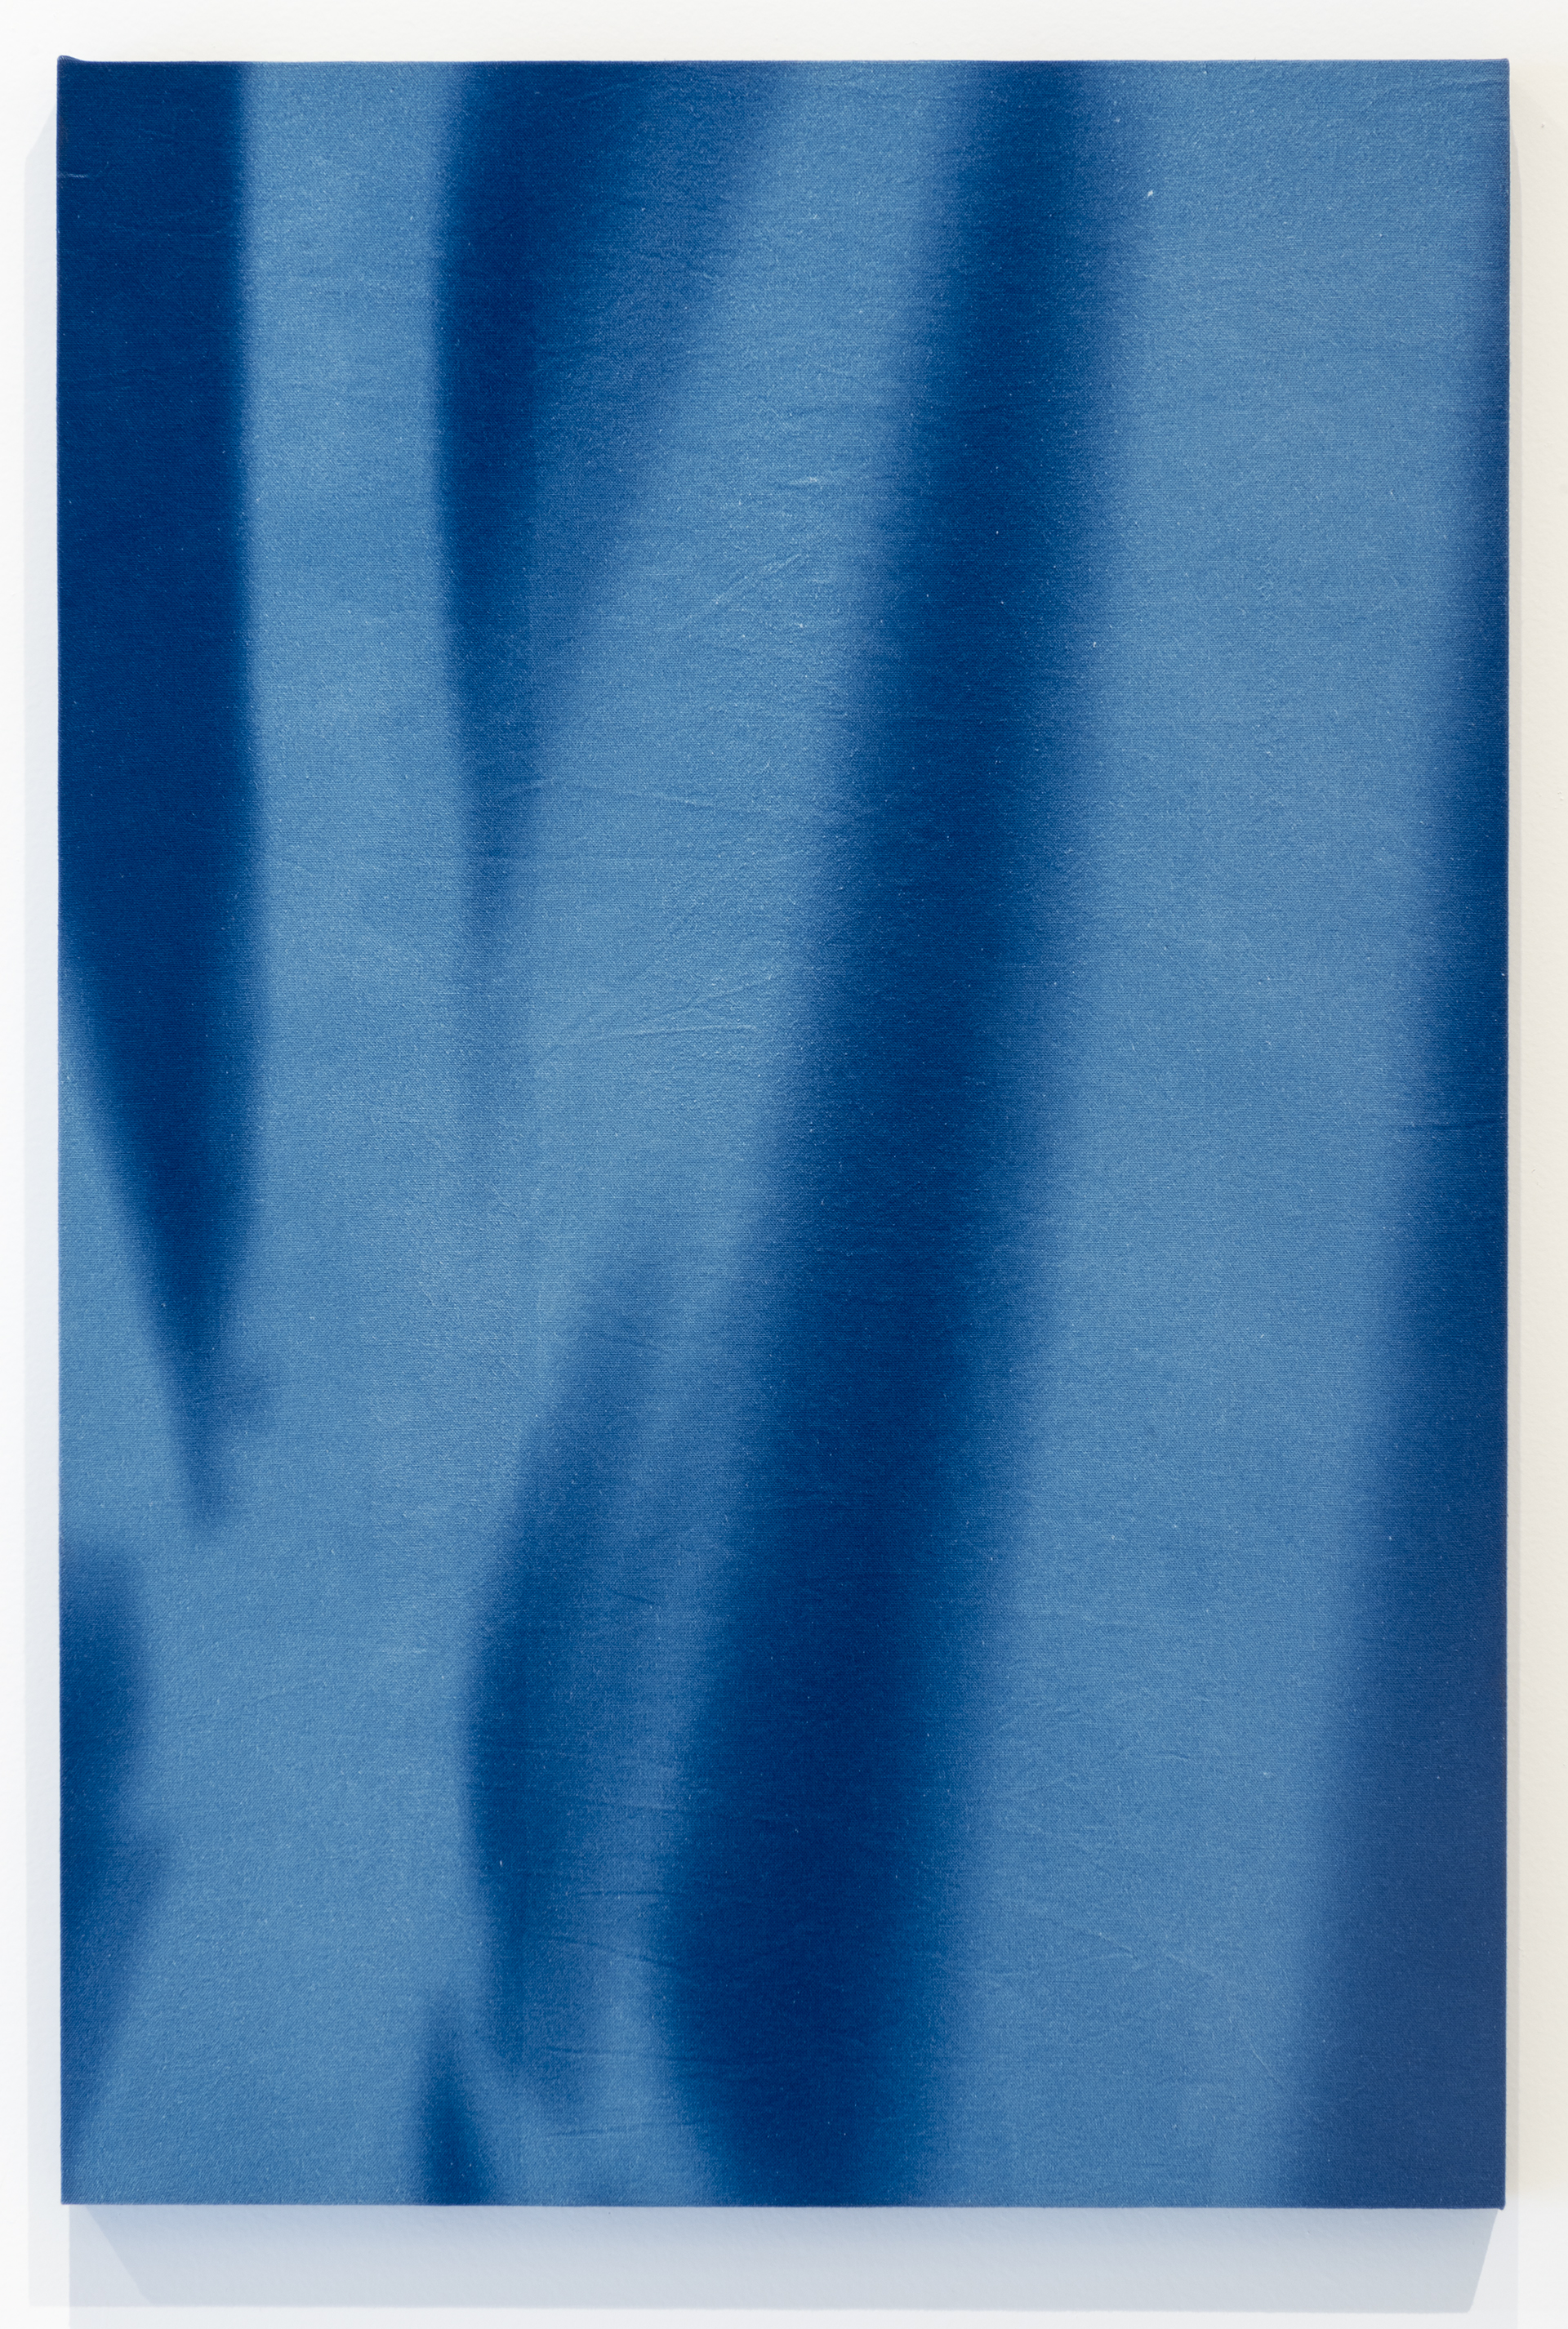 “26 de Agosto 2015, 11:06 h. Torre Sur Museo del Chopo, tiempo de exposición13 min” Cianotipia sobre tela montado sobre bastidor  90x60 cm (35 x 23”)